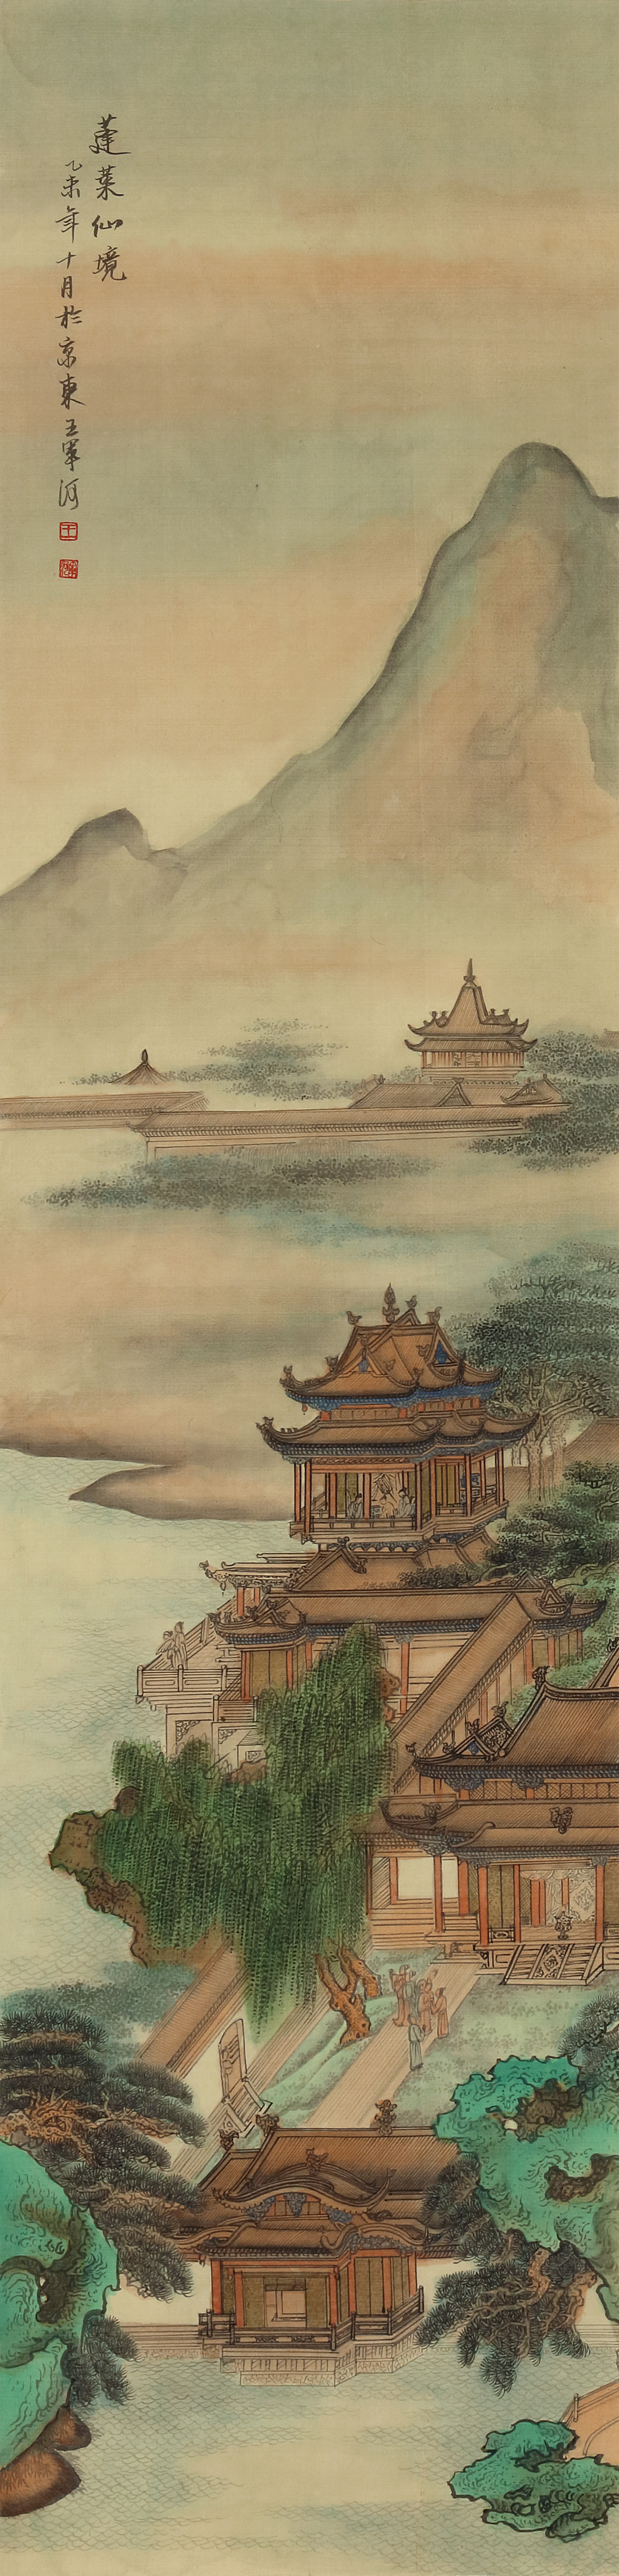 传统工笔画界画中的古建筑设计(王军河绘)